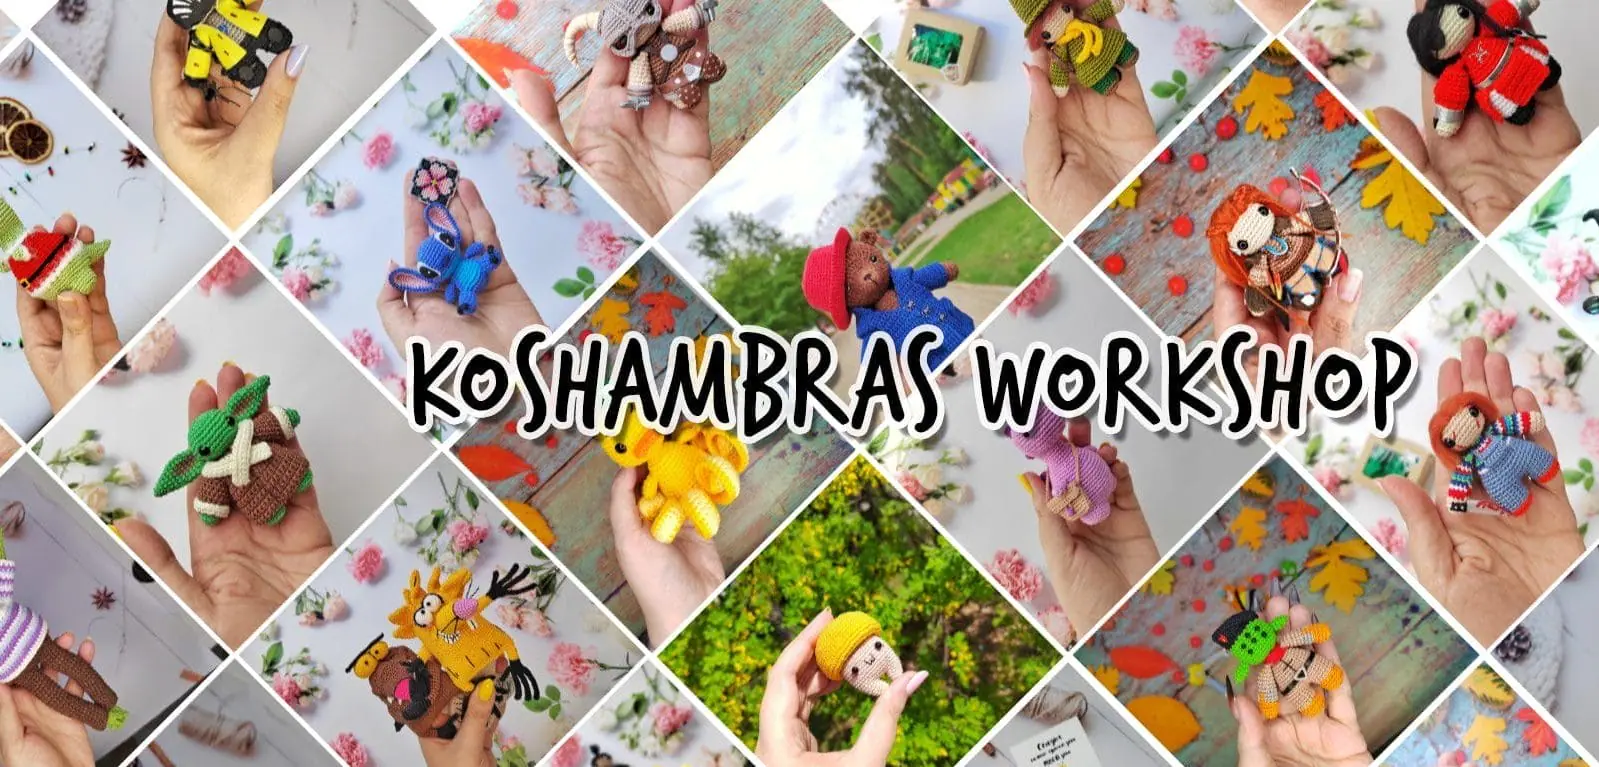 KoshambrasWorkshop